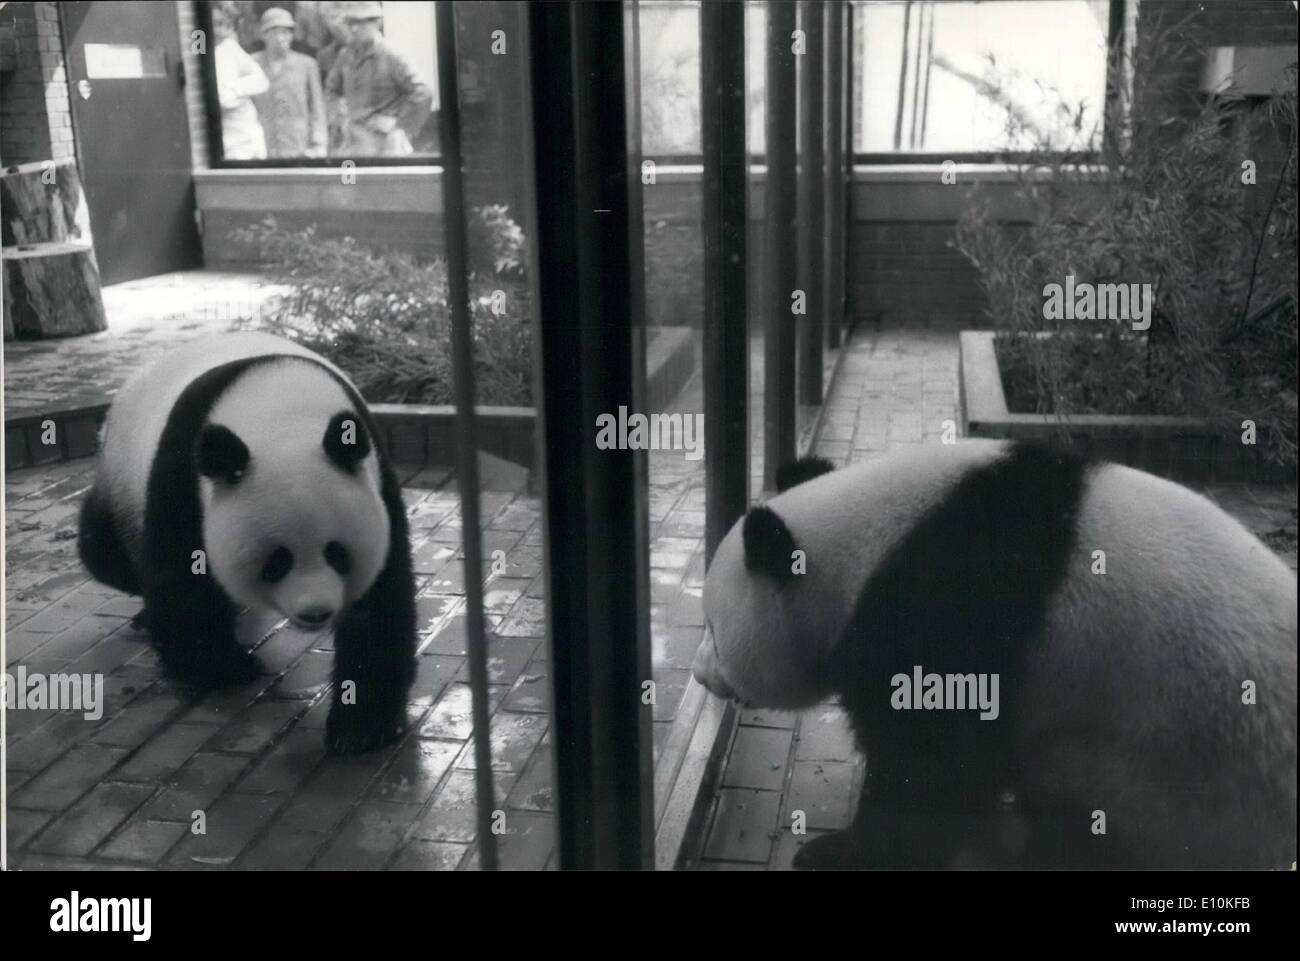 05. Mai 1973 - Tokyos Pandas ziehen in New 60,000 ''Home'' um.: Die beiden riesigen Pandas Kangkang und Lanlan, die China Japan in diesem Jahr nach der Erneuerung der freundschaftlichen Beziehungen zwischen den beiden Ländern präsentiert hat, wurden in neue Stifte verlegt, die 60,000 kosten, um sie zu bauen. Das neue "Home" umfasst 154 Quadratmeter. Es ist klimatisiert und verfügt über Fußbodenheizungen, Glaswaschsprays und Schallisolierung. Es gibt auch einen 223 Quadratmeter großen Spielplatz und Duschen, sowie einen speziellen Stift für Baby Pandas Stockfoto